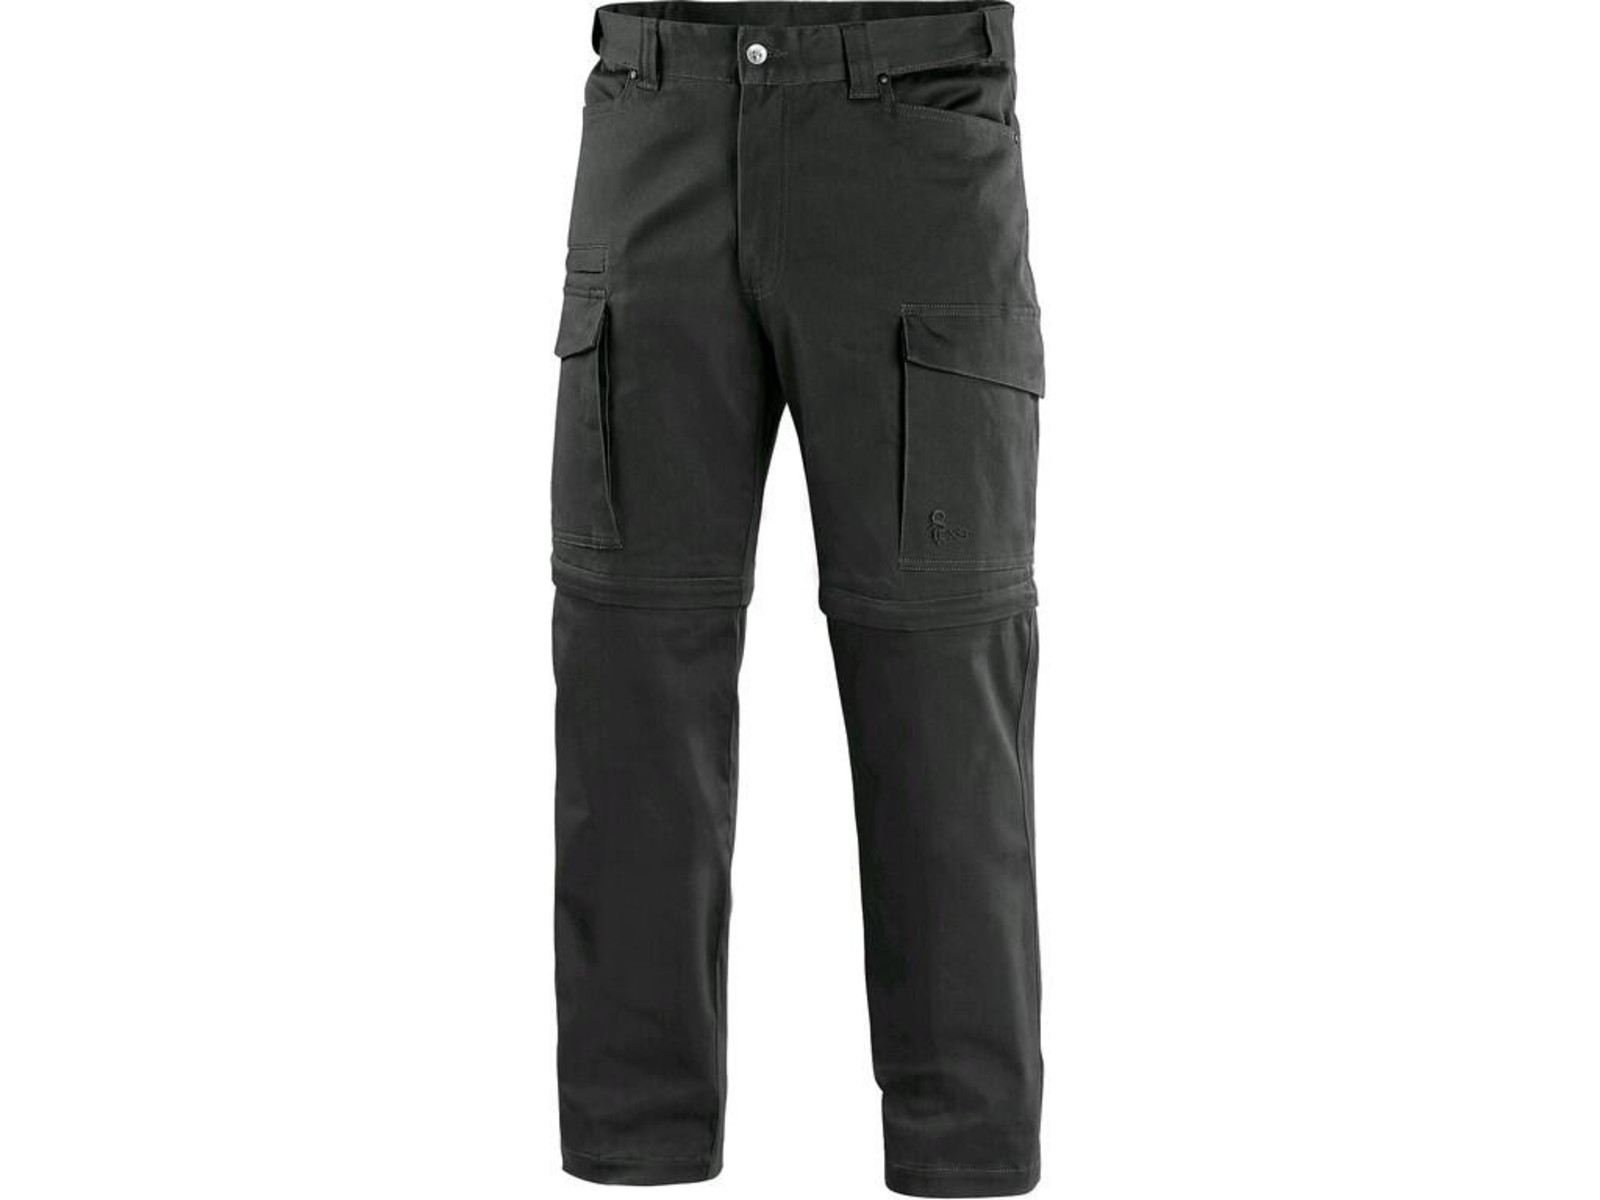 Pánske nohavice CXS Venator 2v1 - veľkosť: 46, farba: čierna